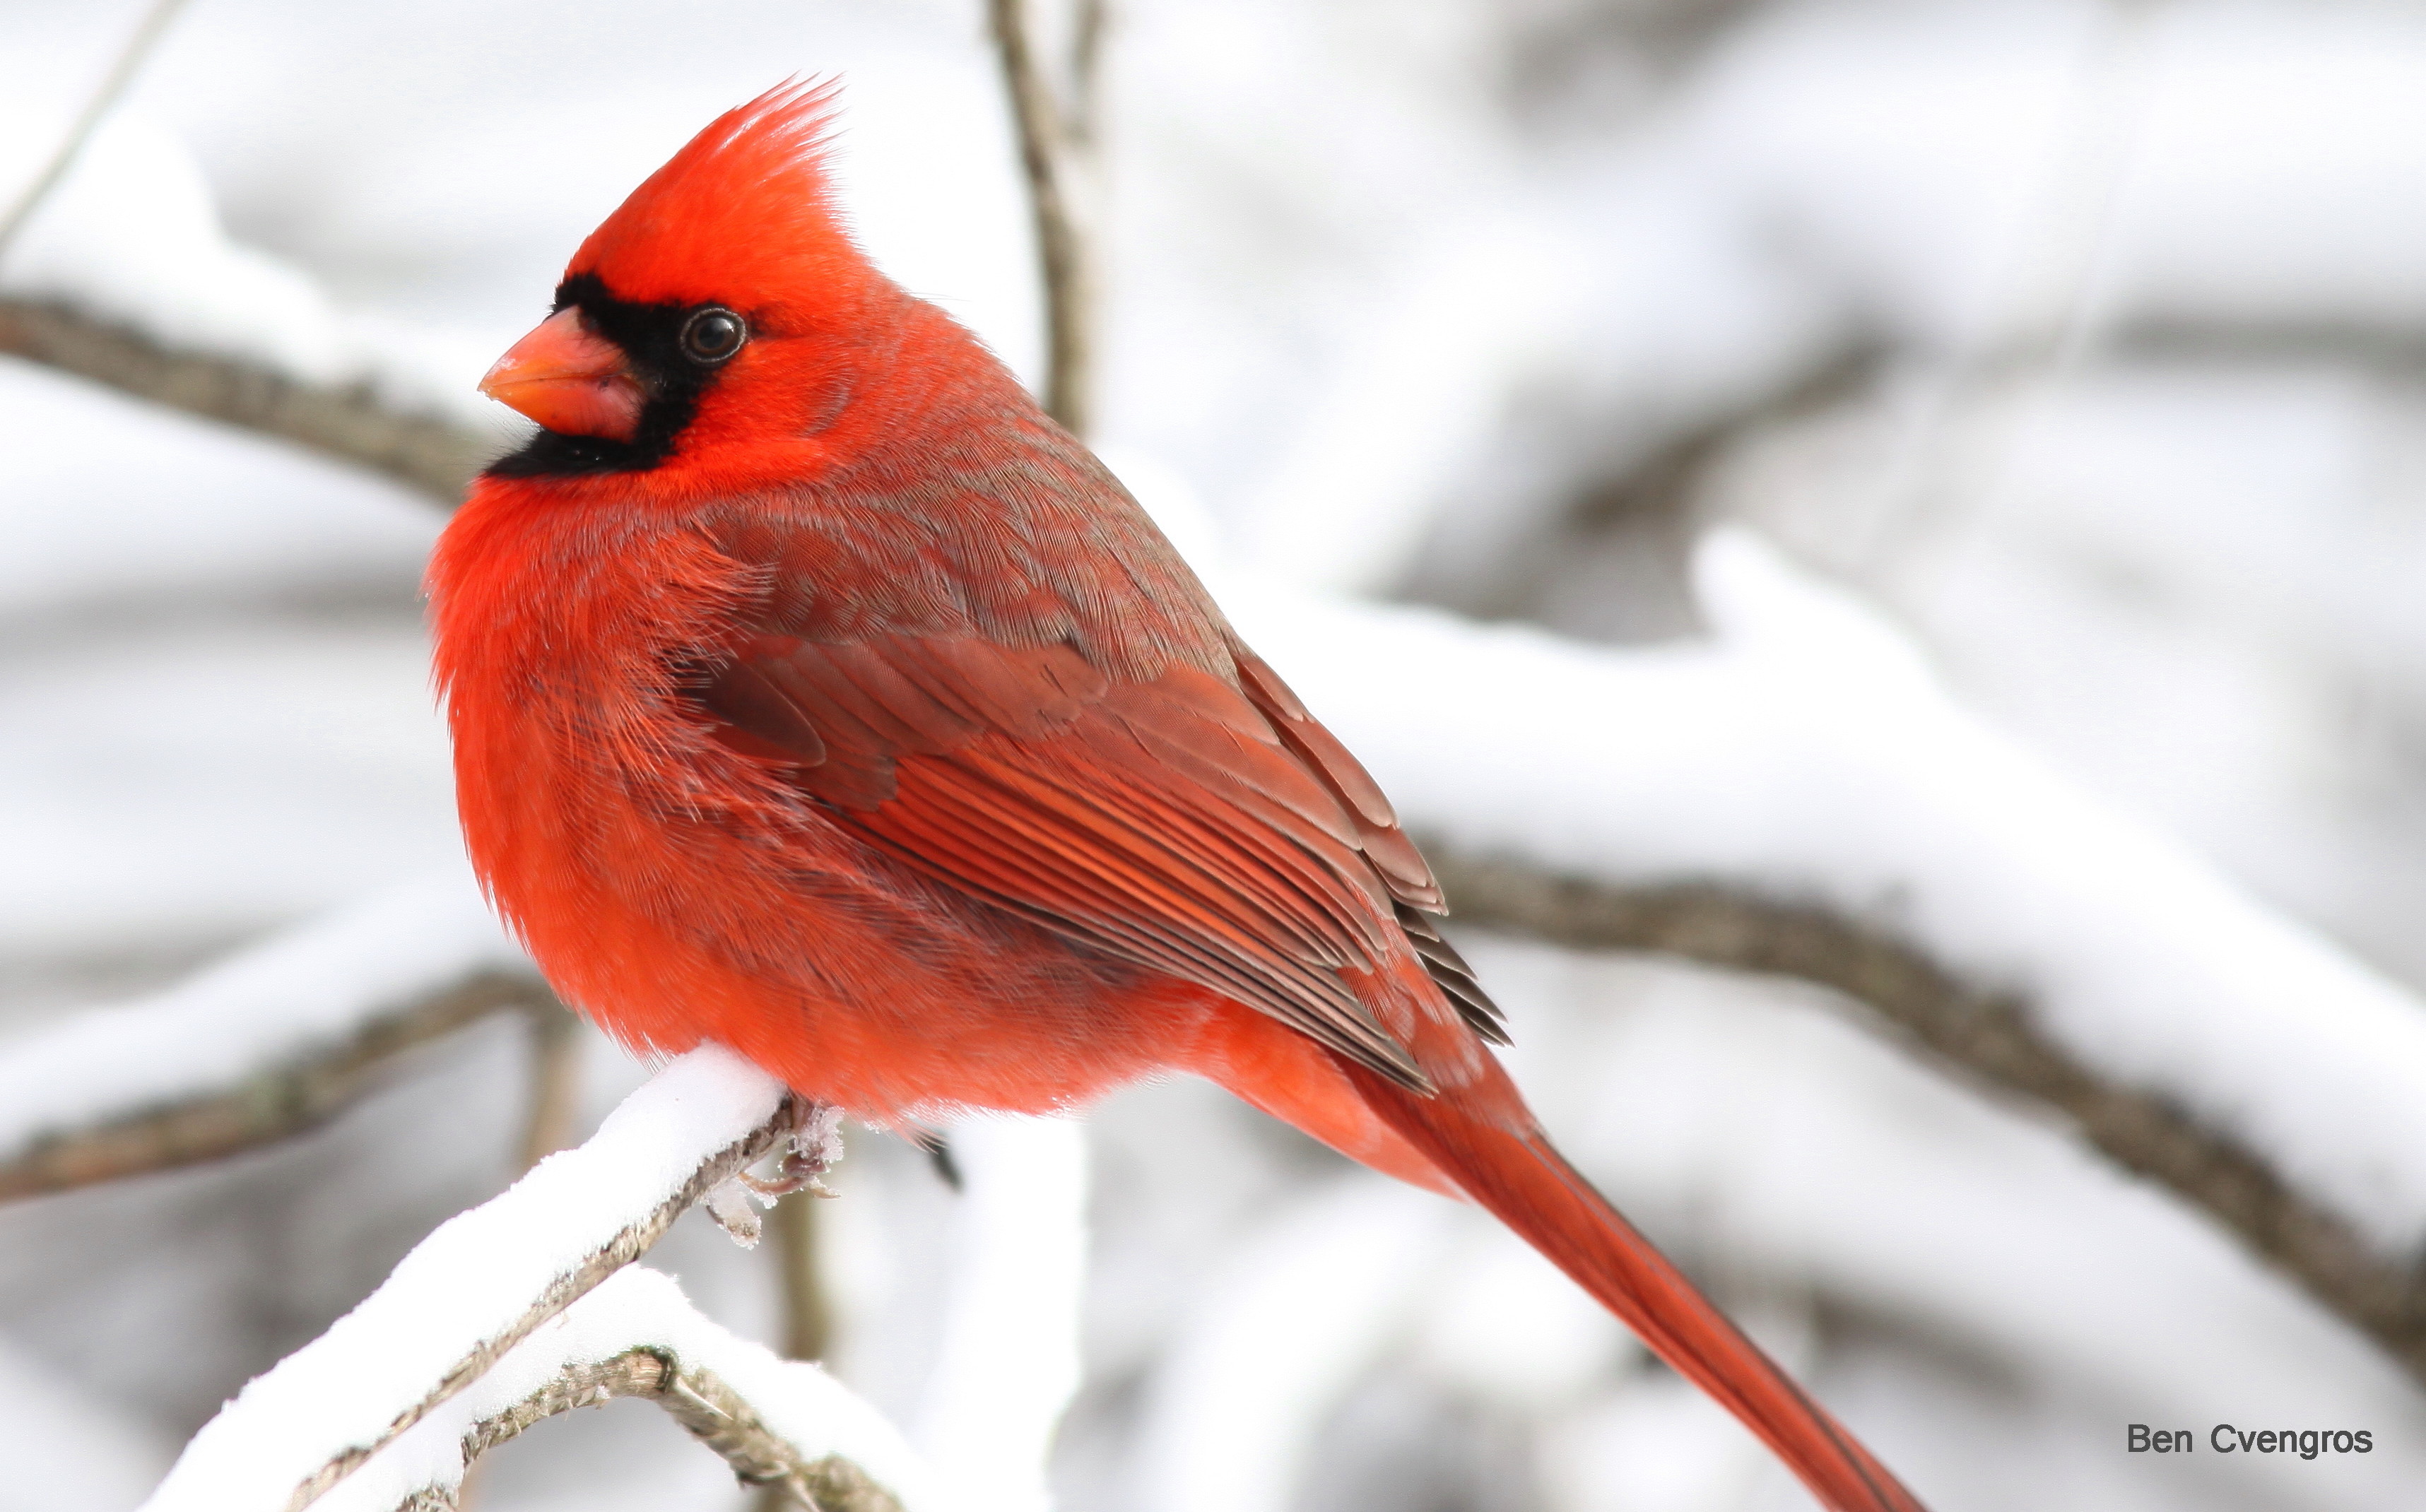  northern cardinal, indiana 